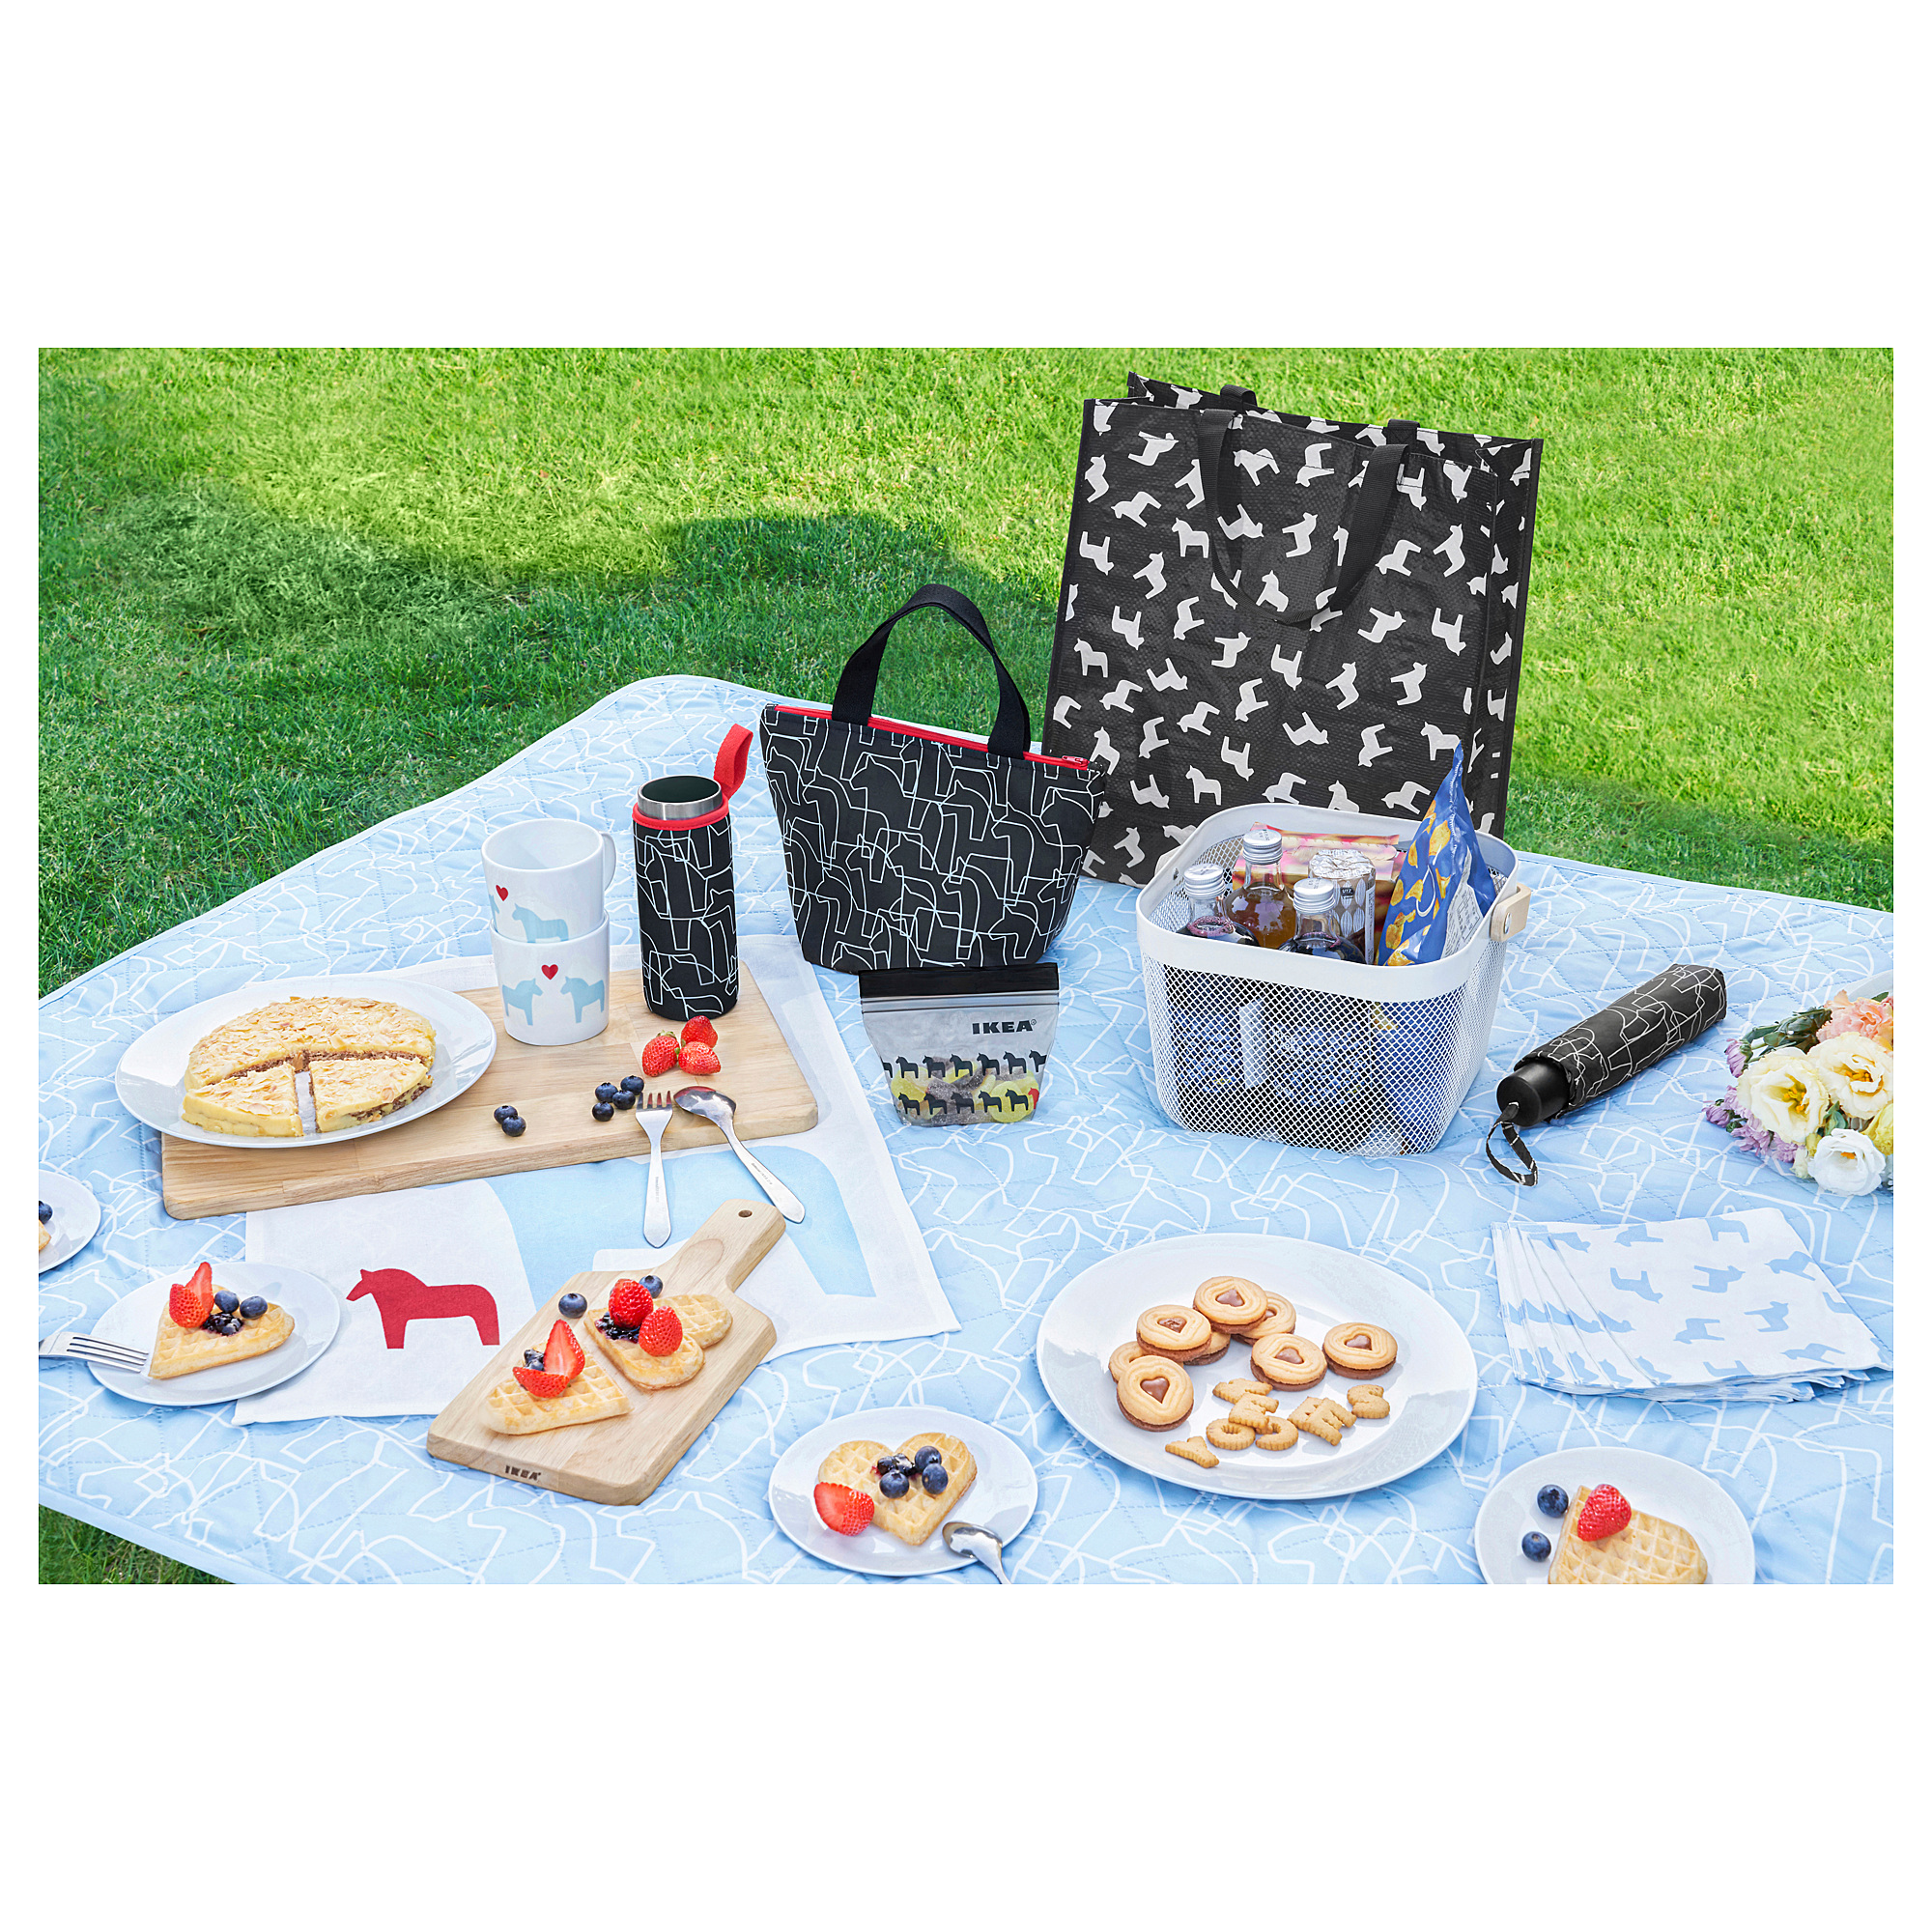 HÄSTHAGE picnic blanket